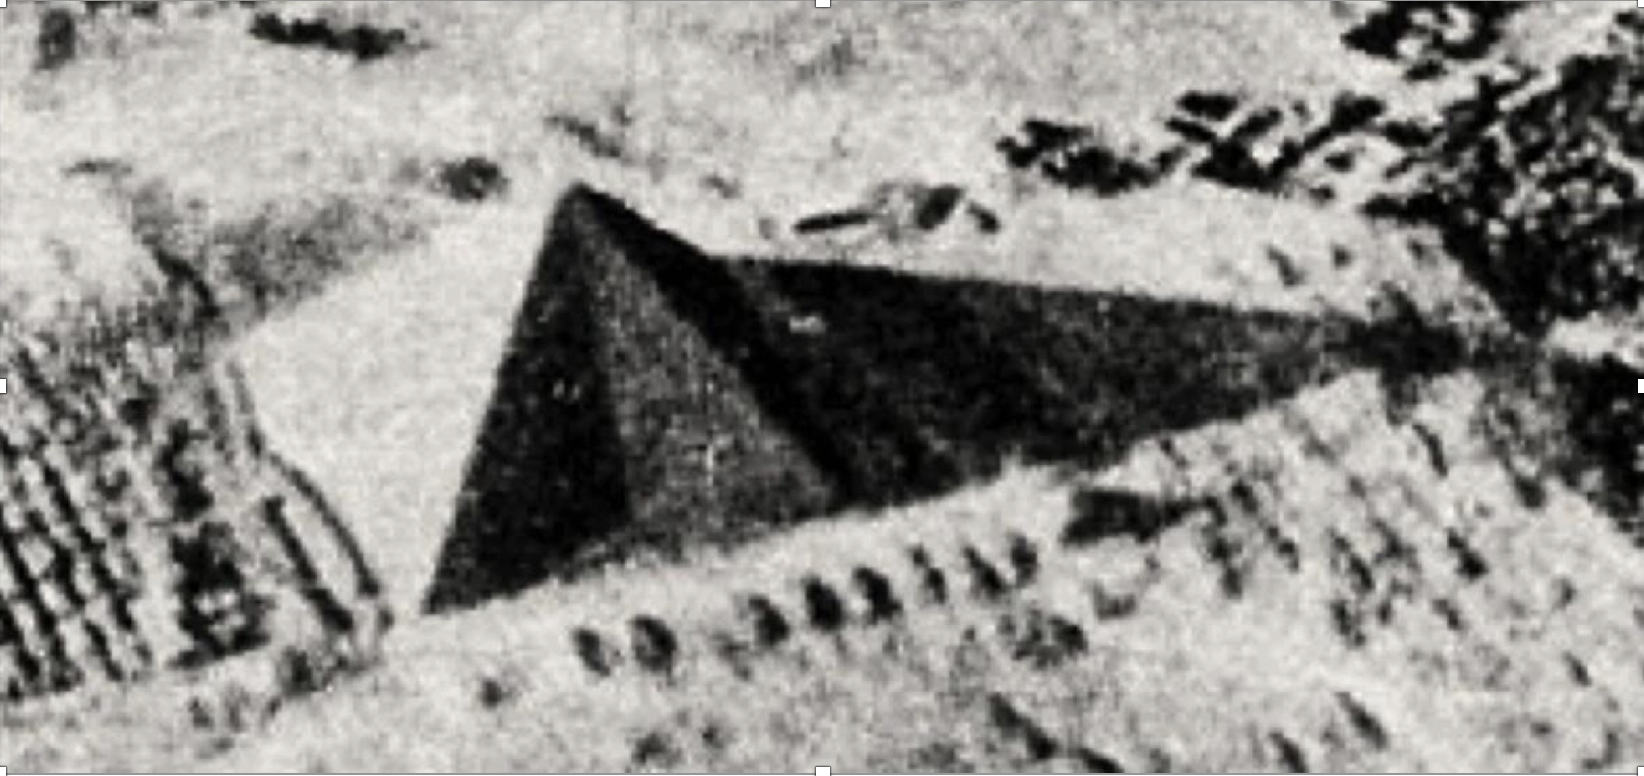 Тени на грани пирамиды Хеопса в день весеннего равноденствия